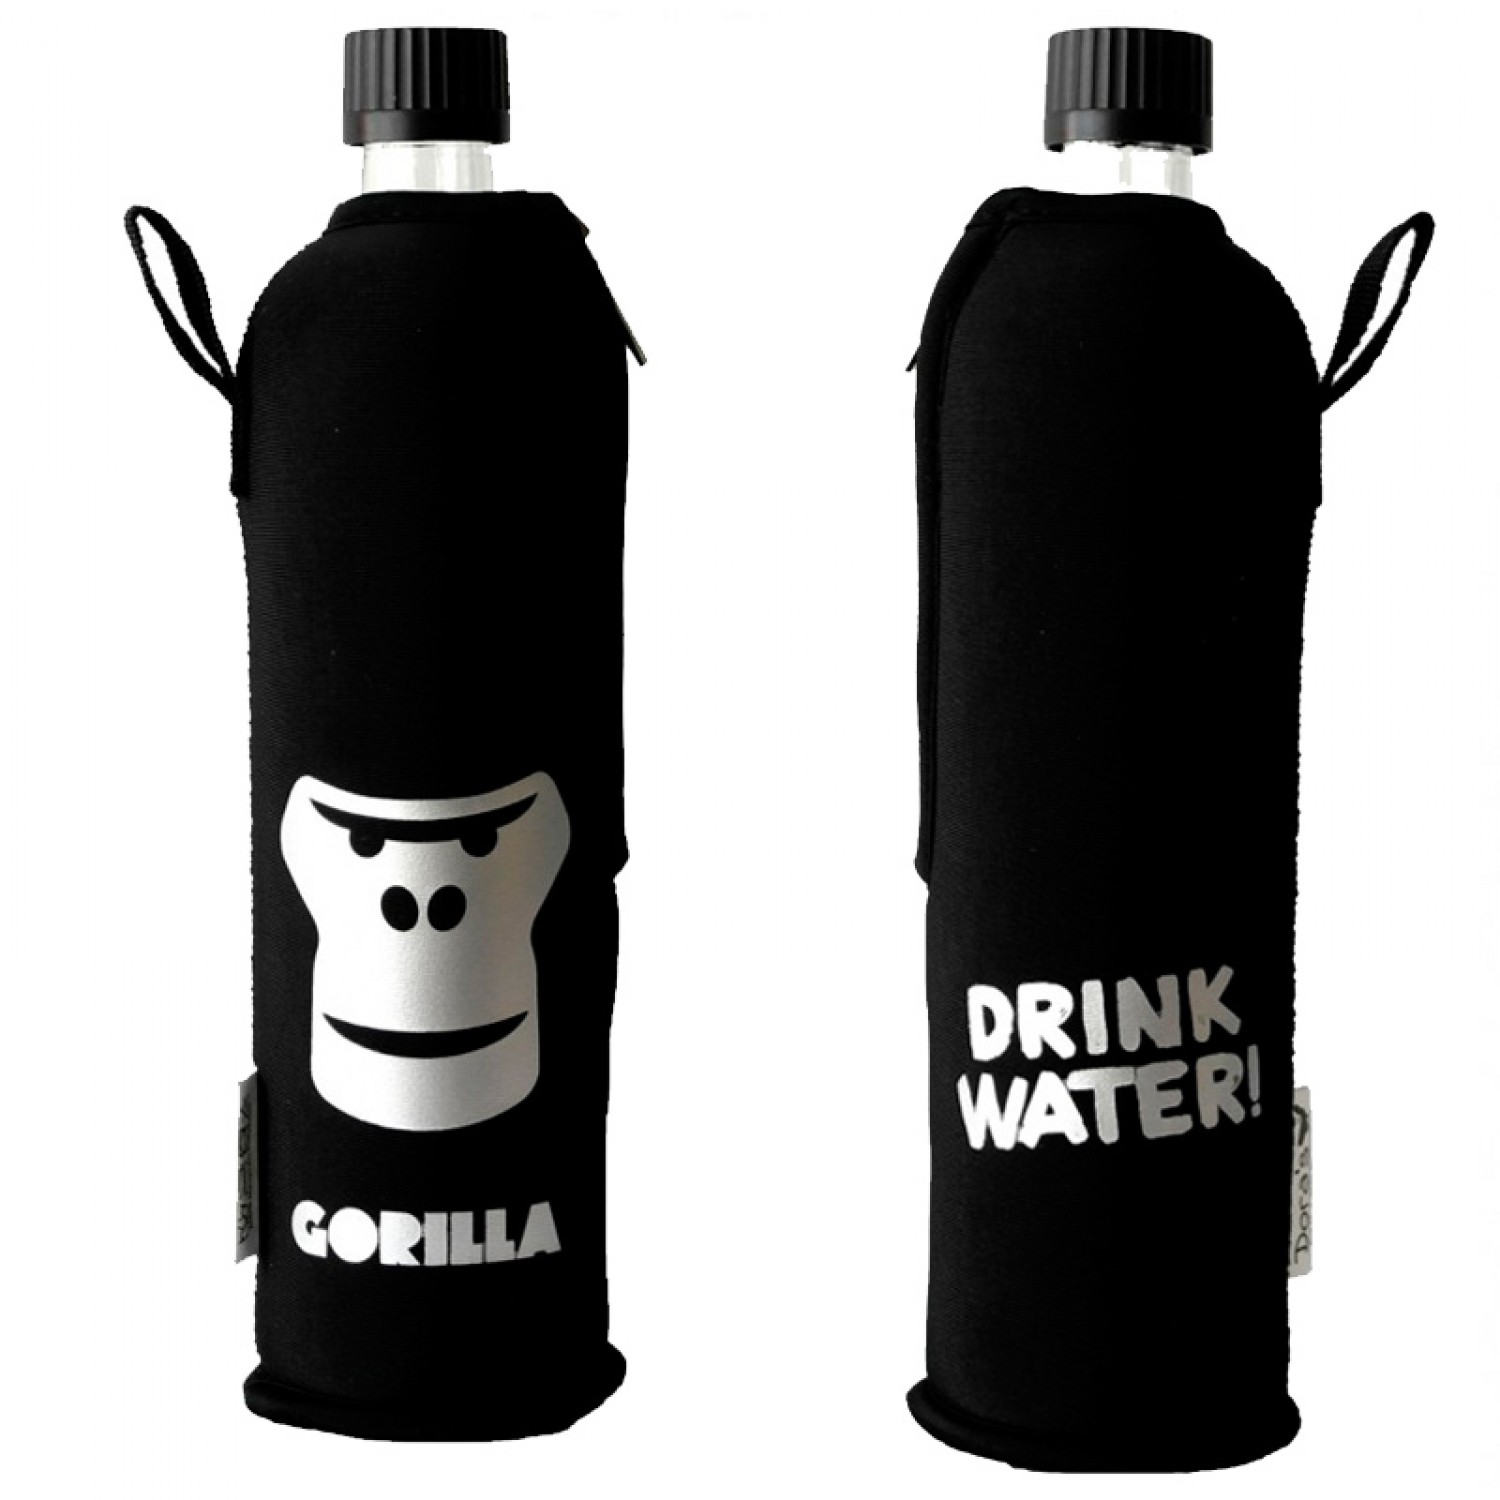 Dora’s Glass Bottle in “Gorilla” Neoprene Sleeve